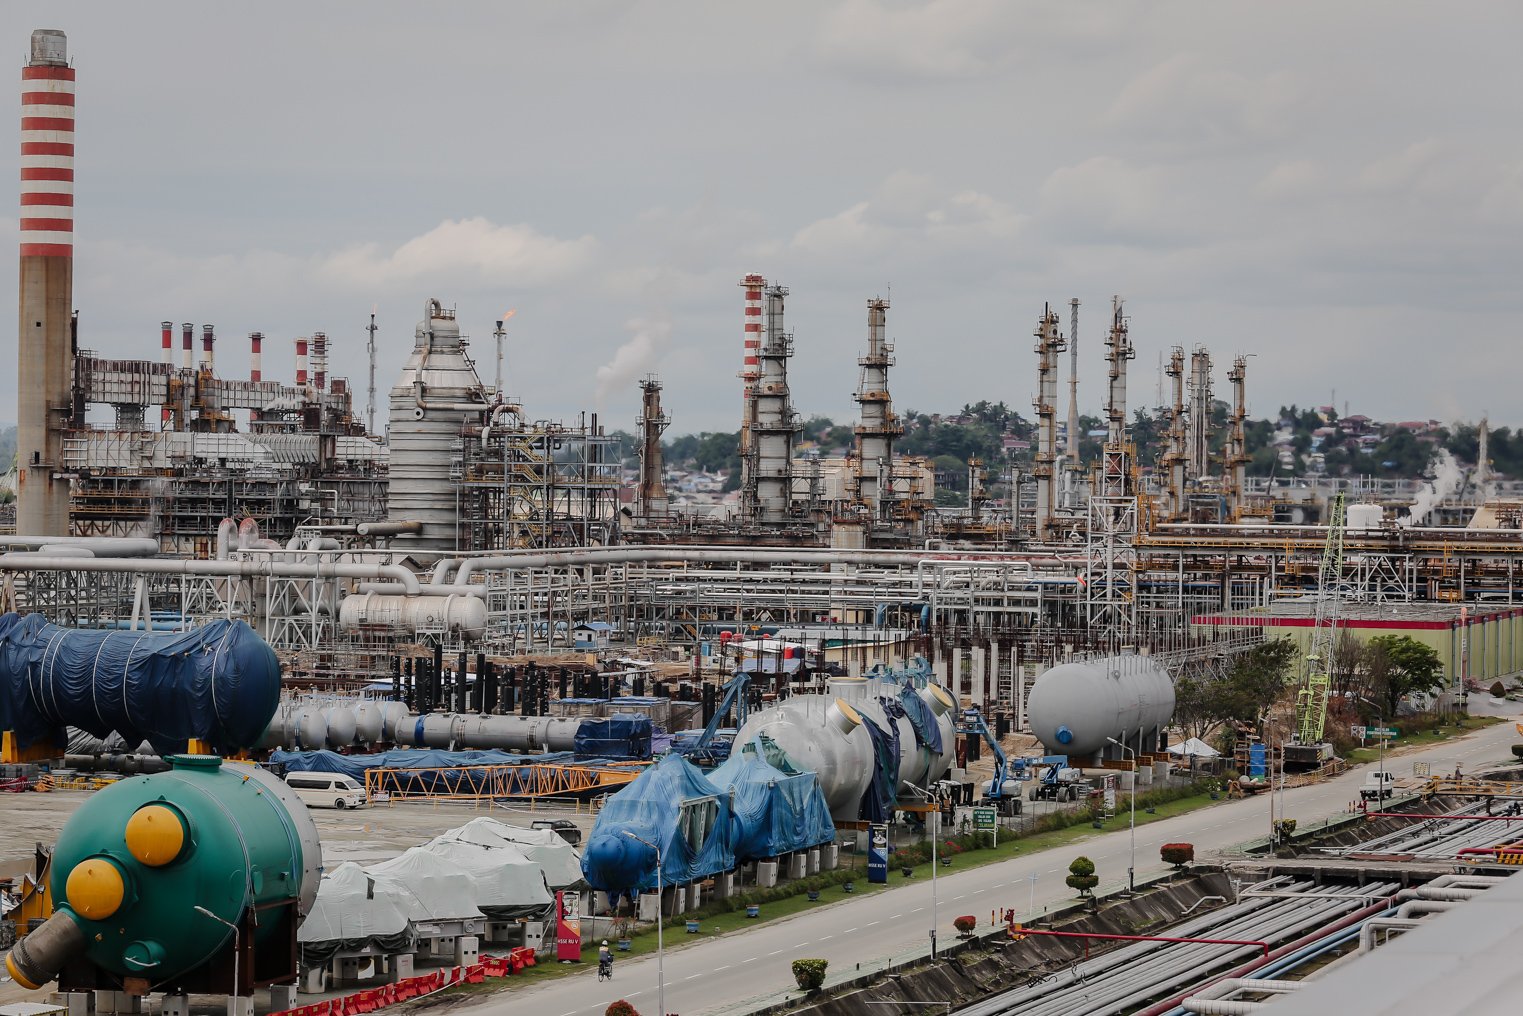 Suasana pengerjaan pembangunan Unit Residual Fluid Catalytic Cracking (RFCC) yang merupakan unit proses utama pembangunan proyek refinery development master plan (RDMP) Balikpapan, Kalimantan Timur, Sabtu (8/1/2022). Proyek kilang minyak sebesar Rp27,93 triliun dengan total komponen luar negeri senilai Rp19,52 triliun dan komponen dalam negeri Rp8,4 triliun tersebut telah mencapai progres 46,92%.